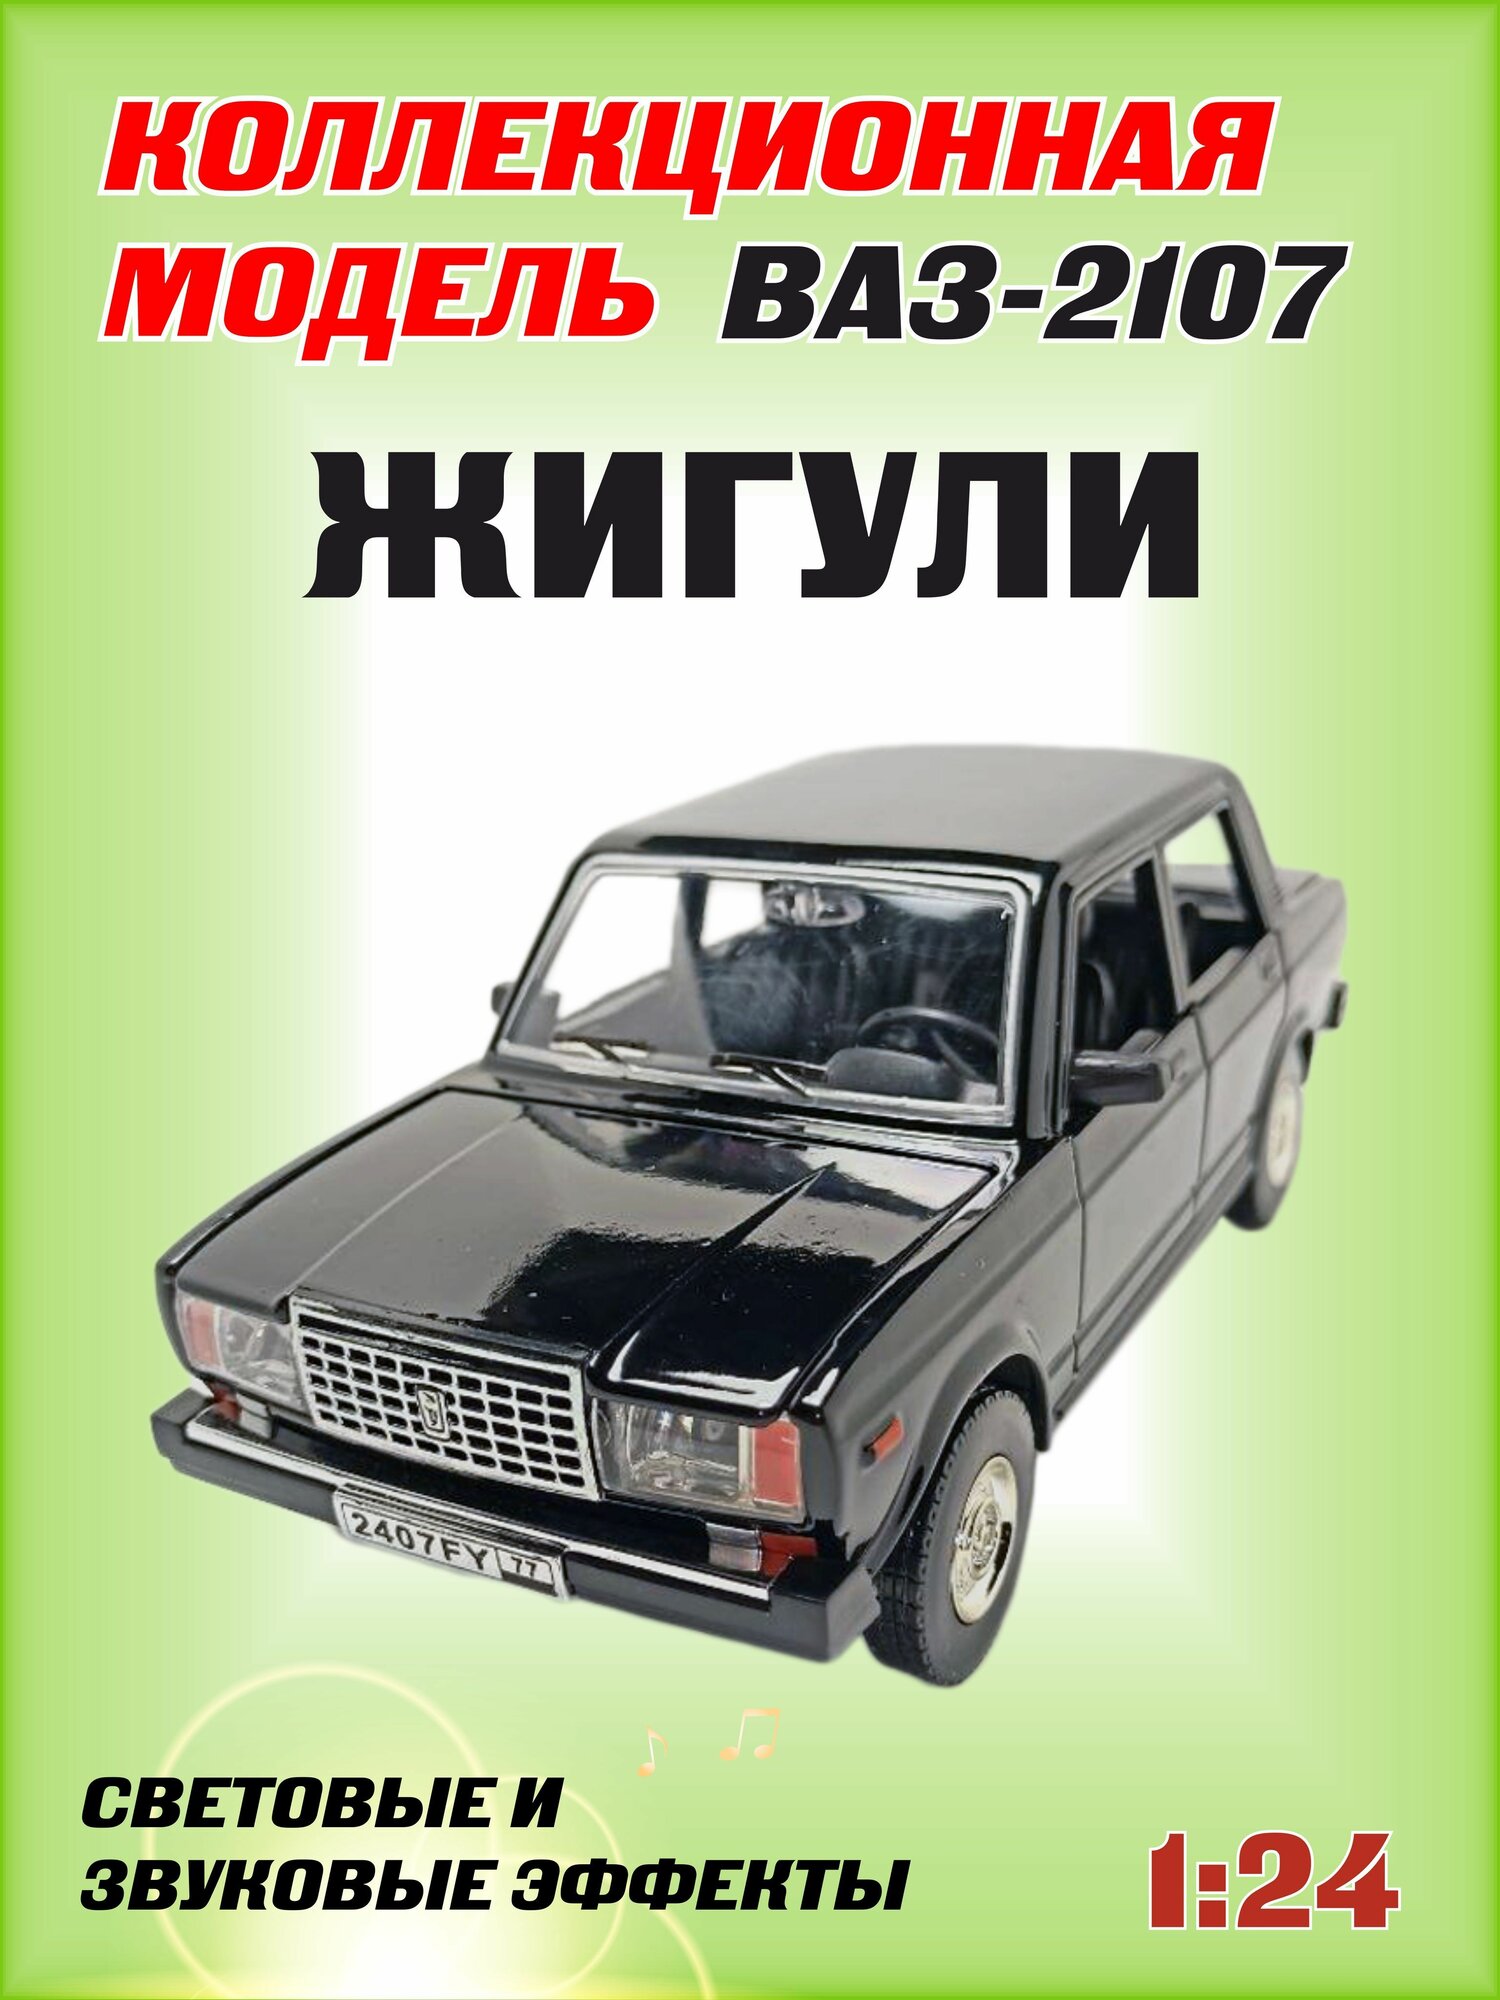 Коллекционная машинка игрушка металлическая Жигули ВАЗ 2107 для мальчиков масштабная модель 1:24 черный